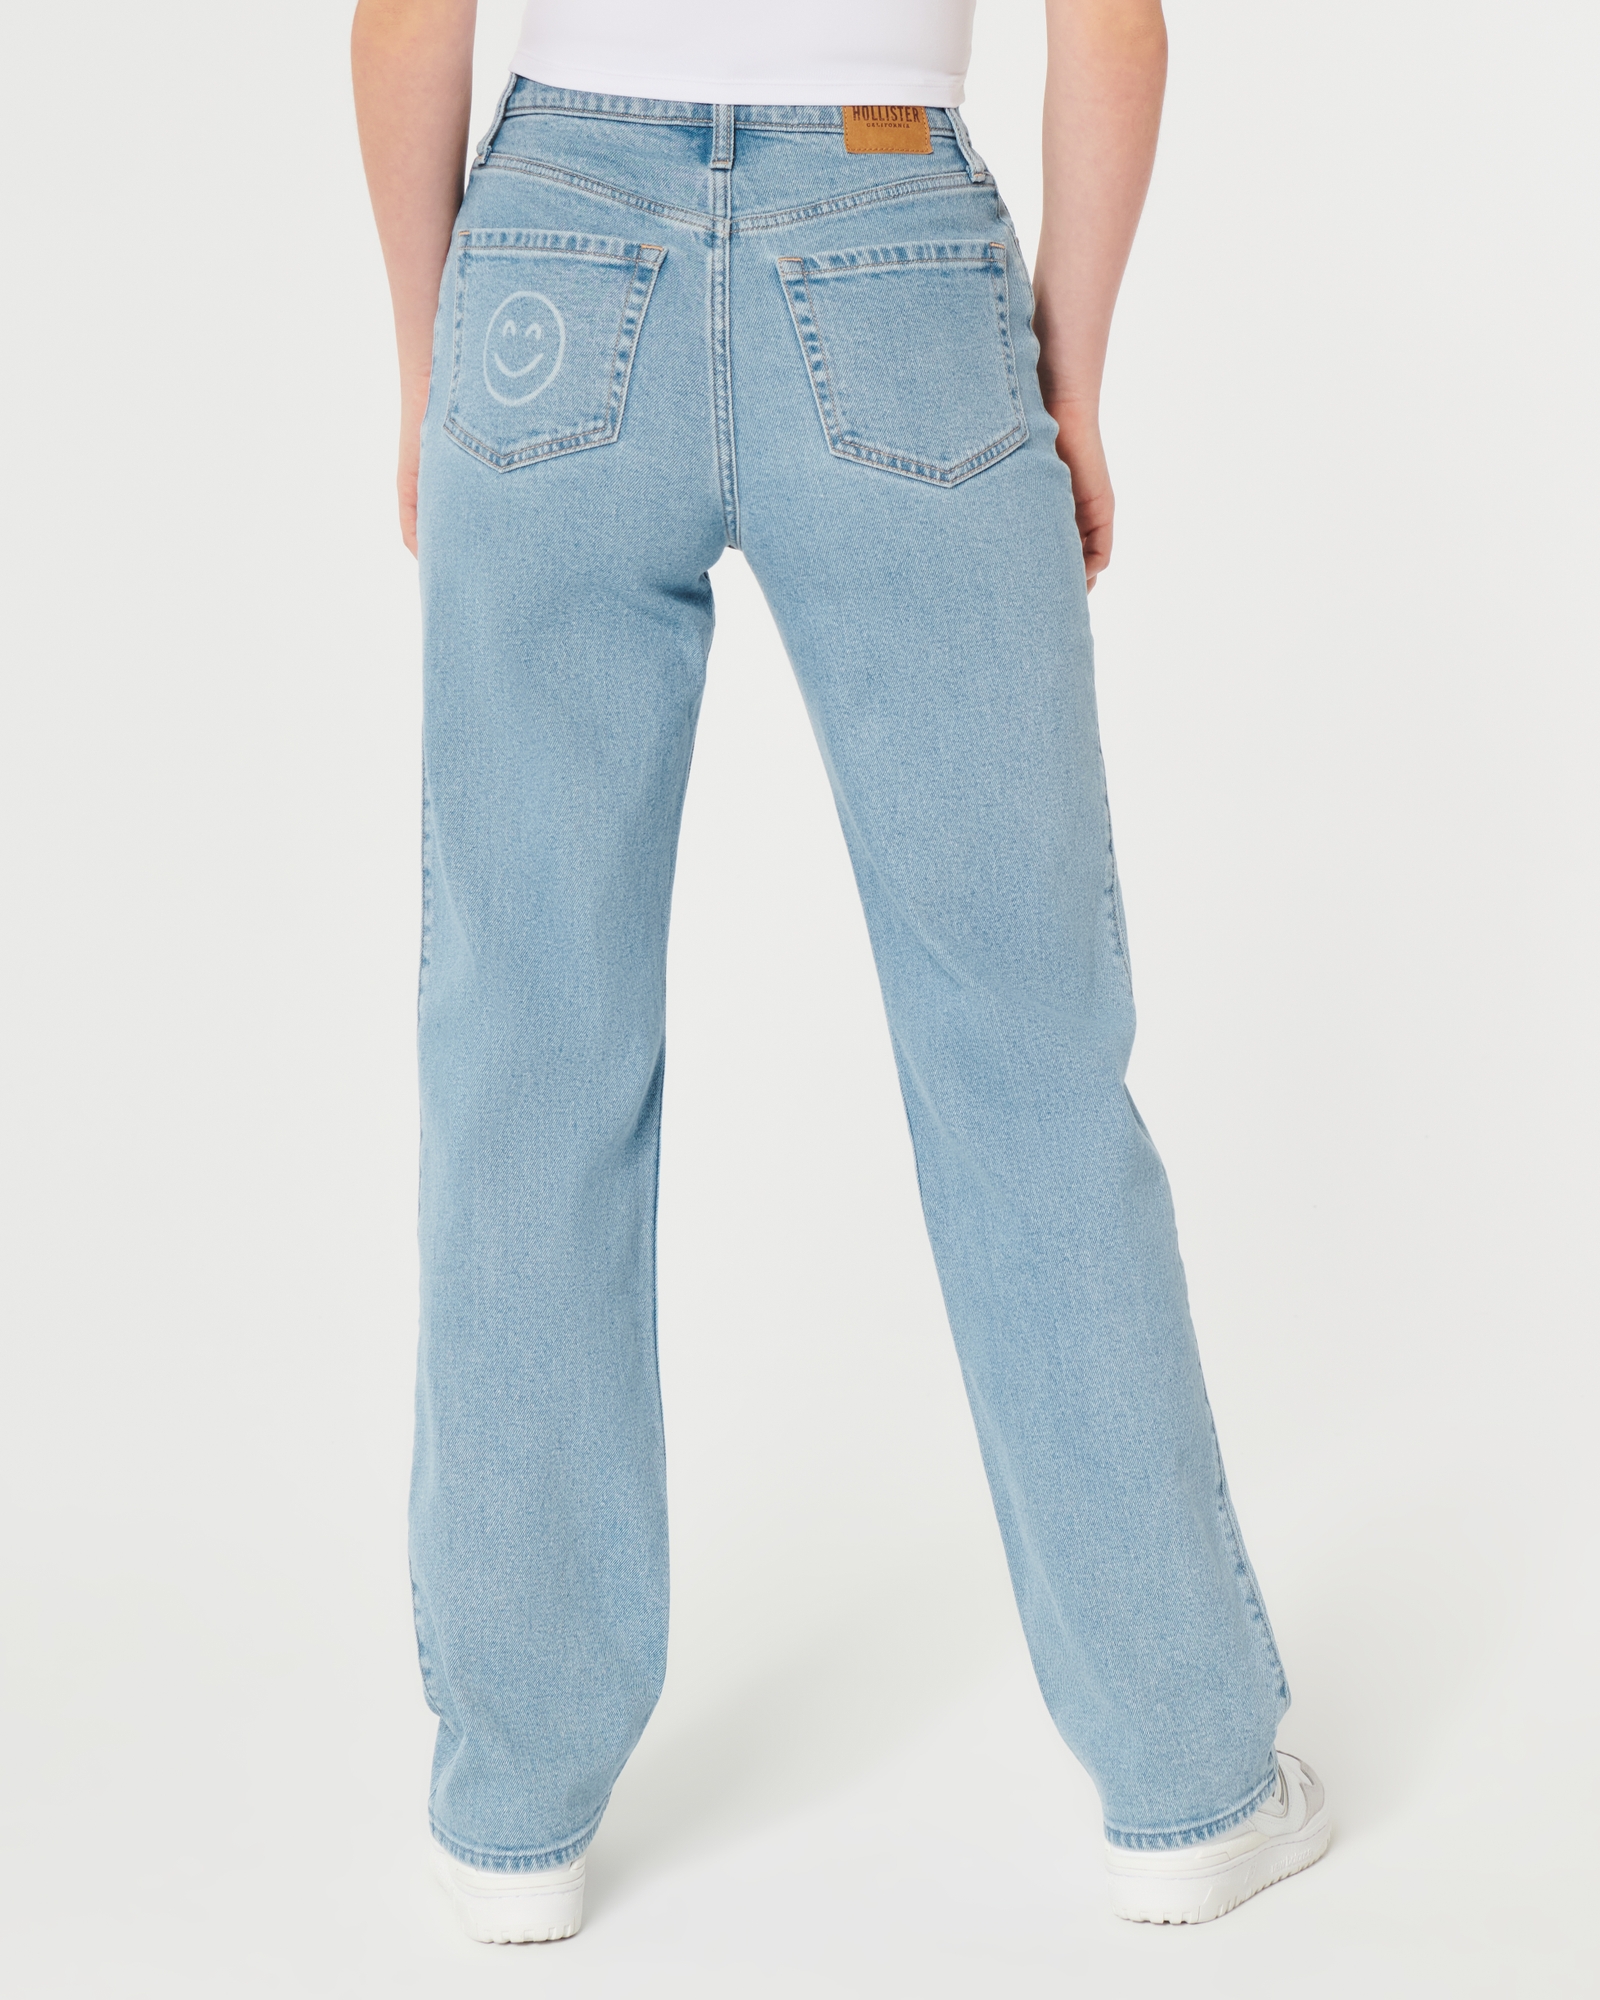 Hollister Women's Jeans W 25 in Blue 100% Cotton